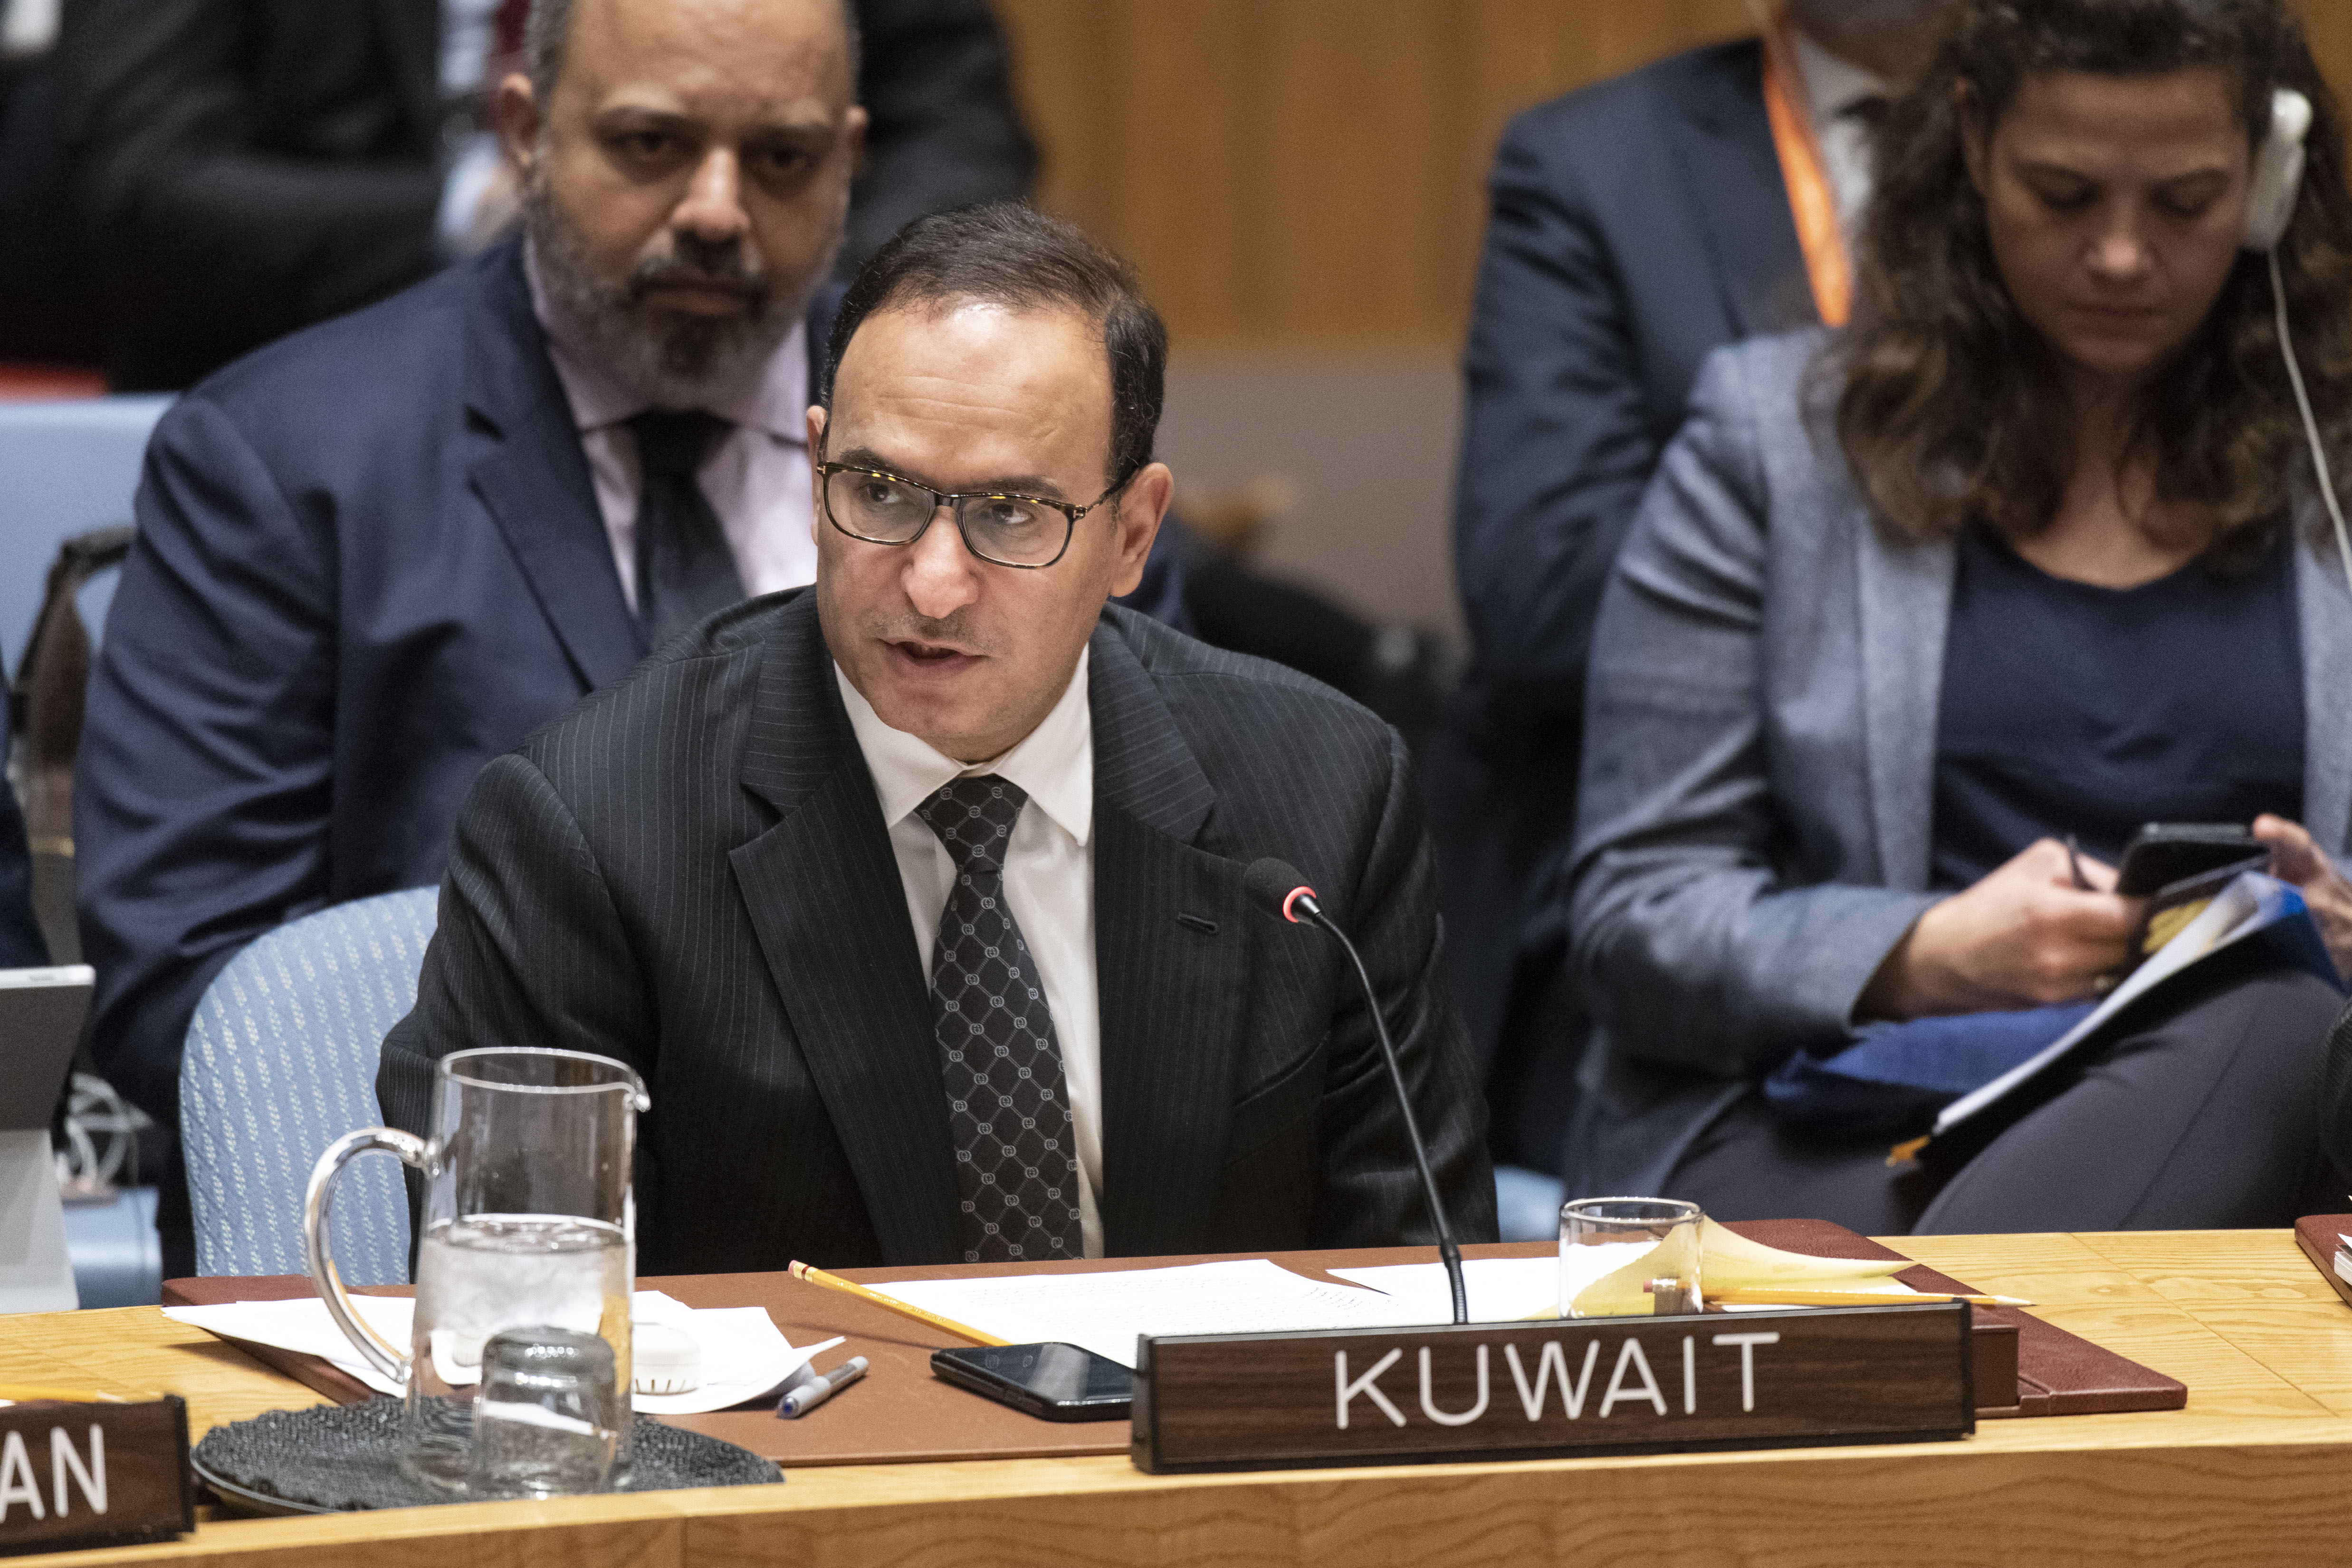 مندوب الكويت الدائم لدى الأمم المتحدة السفير منصور العتيبي في جلسة عقدها مجلس الأمن امس الخميس لبحث المسار السياسي في سوريا